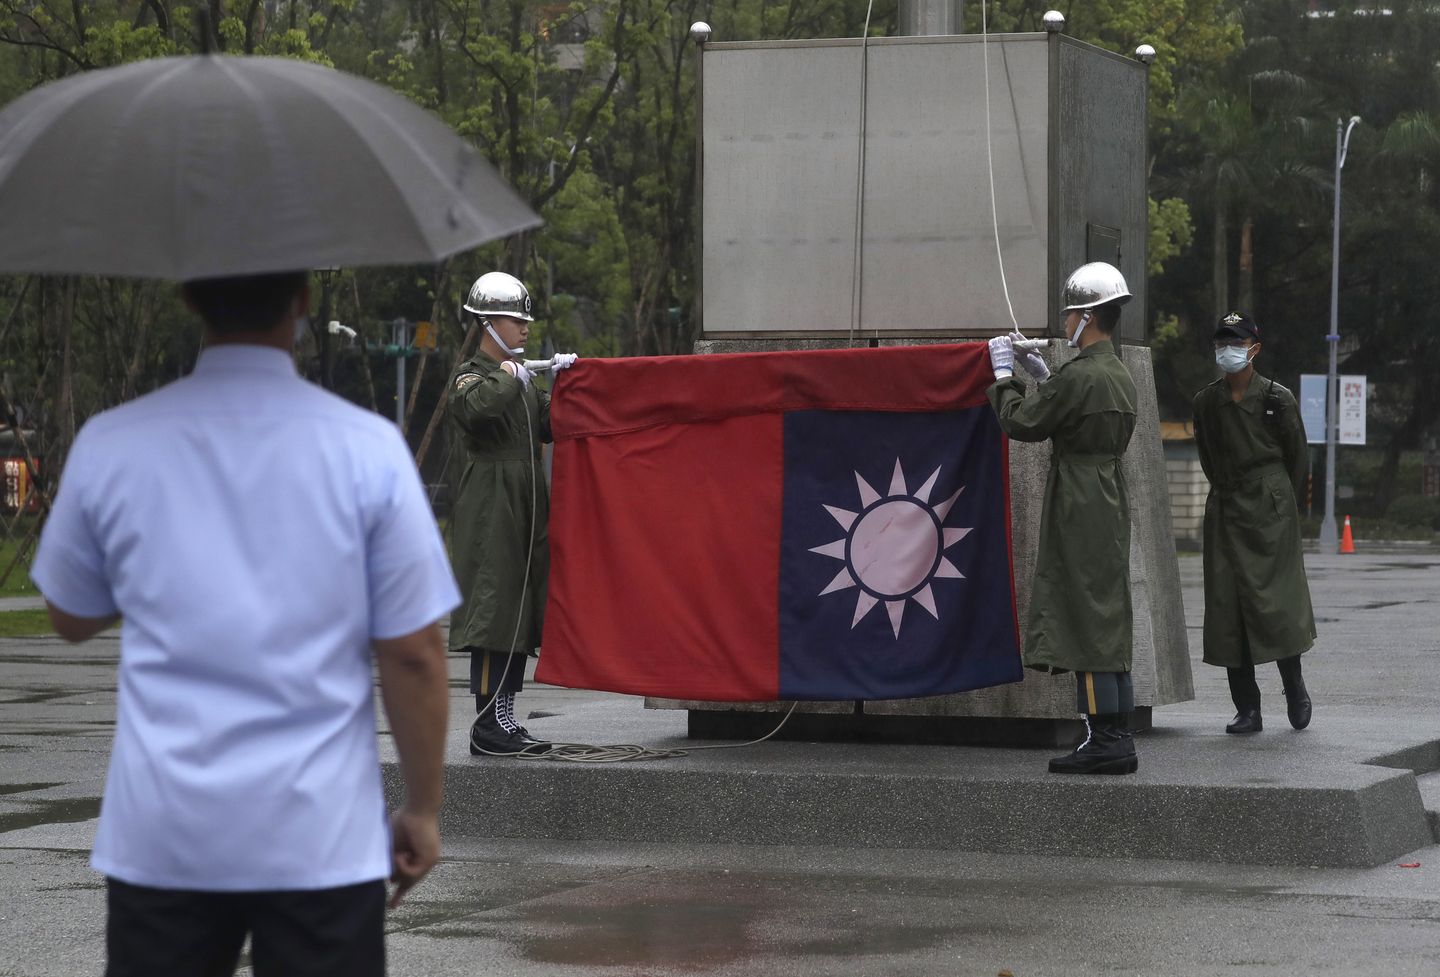 Tayvan, Washington'un Çin hakkındaki savaş konuşmasını soğutmaya çalışıyor